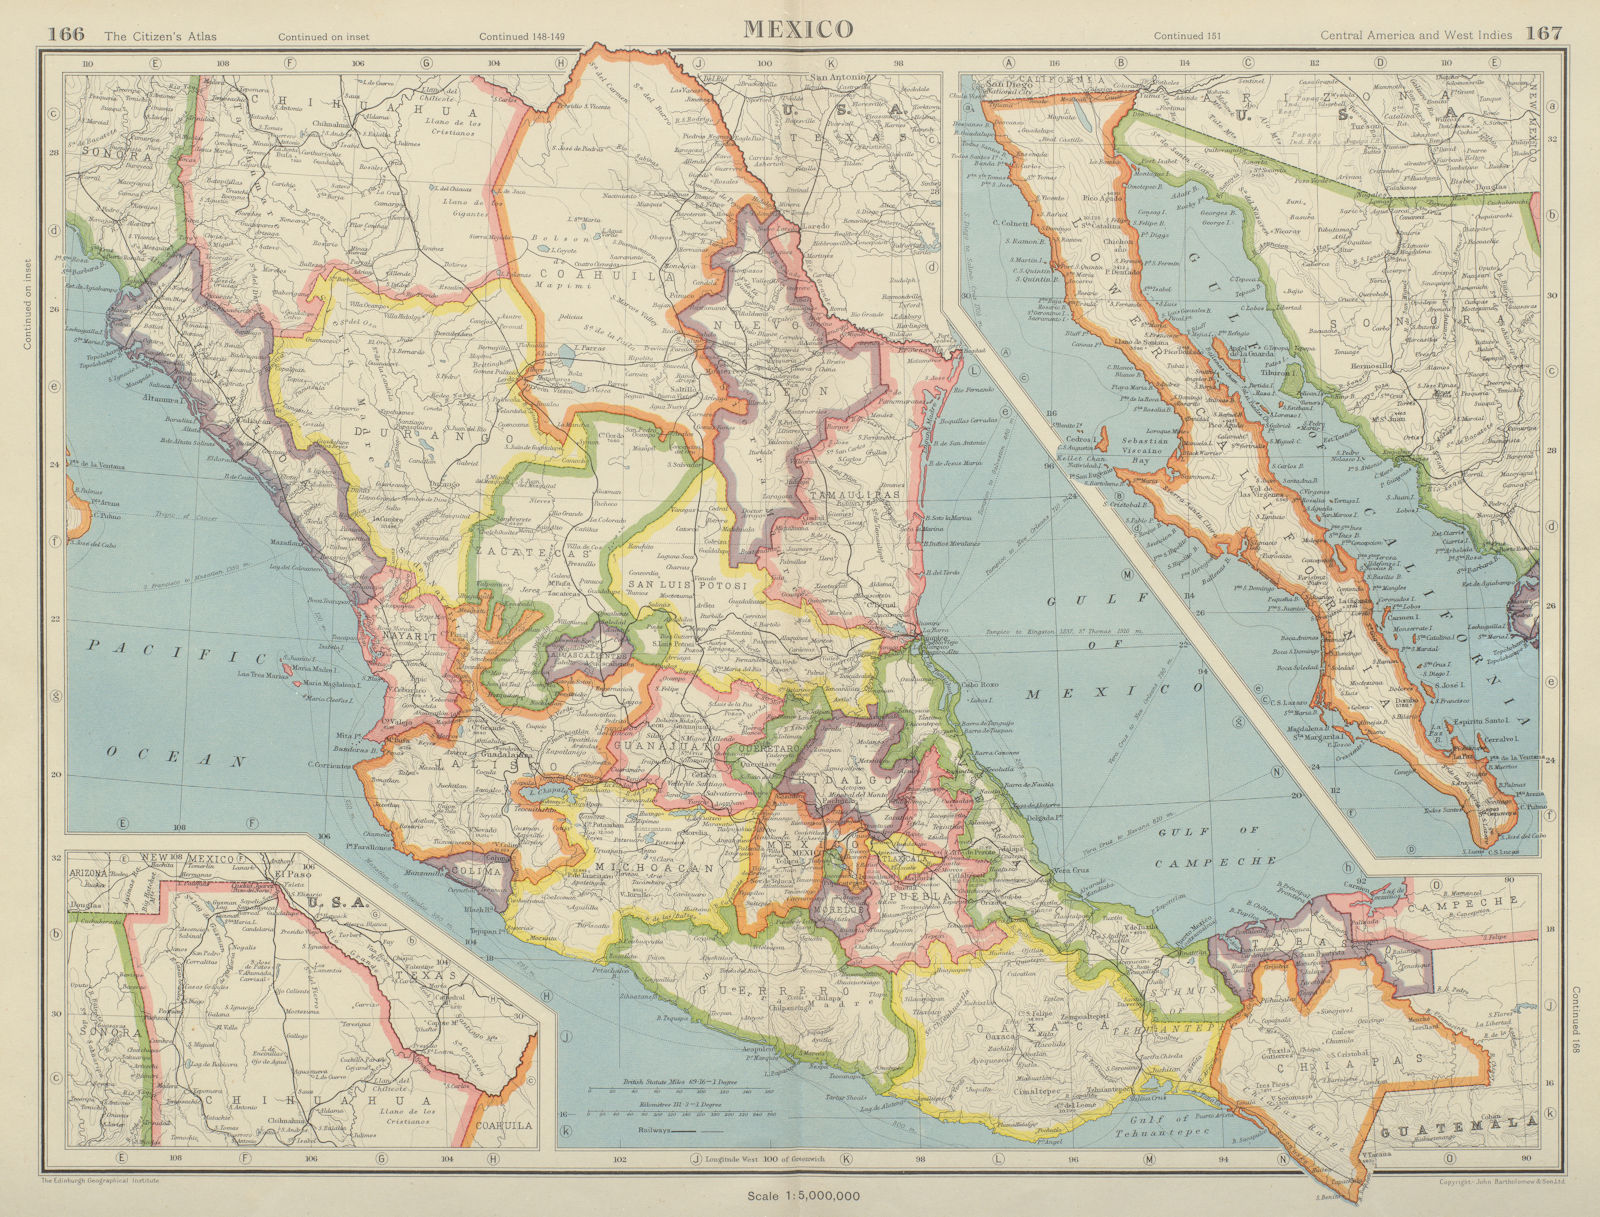 MEXICO. showing states. Baja California. BARTHOLOMEW 1947 old vintage map